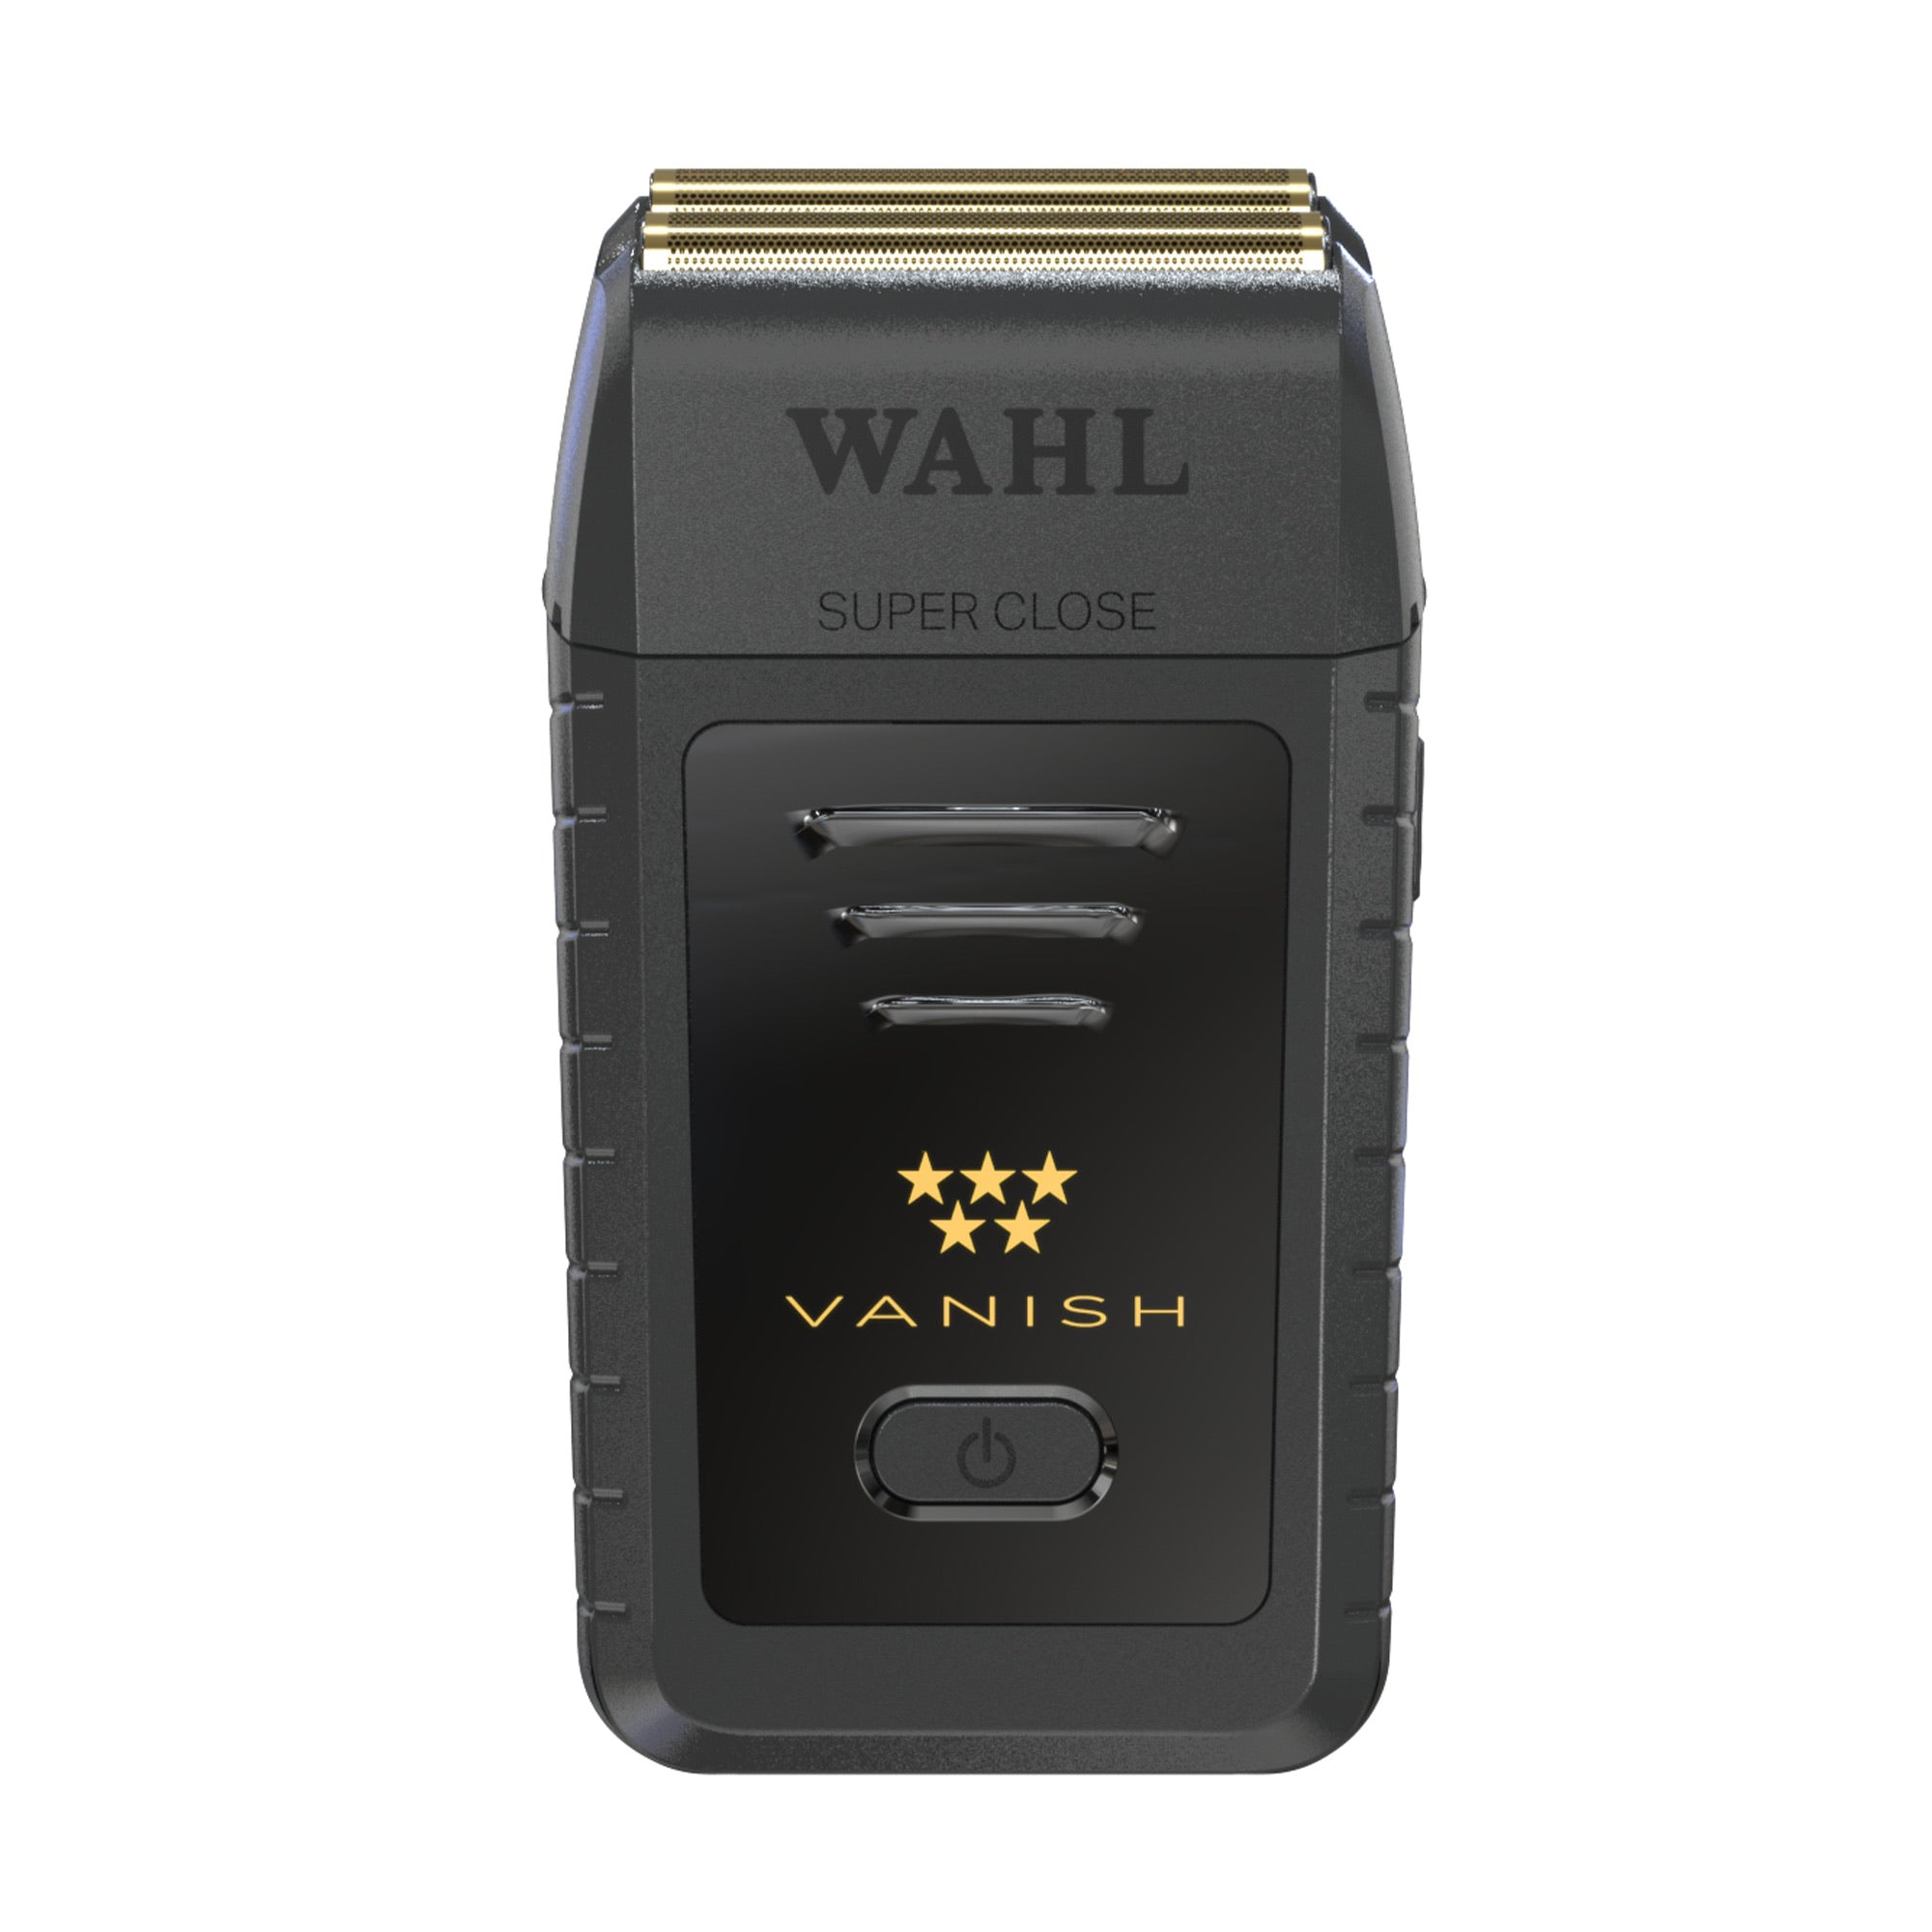 Wahl - 5 Star Vanish Foil Shaver